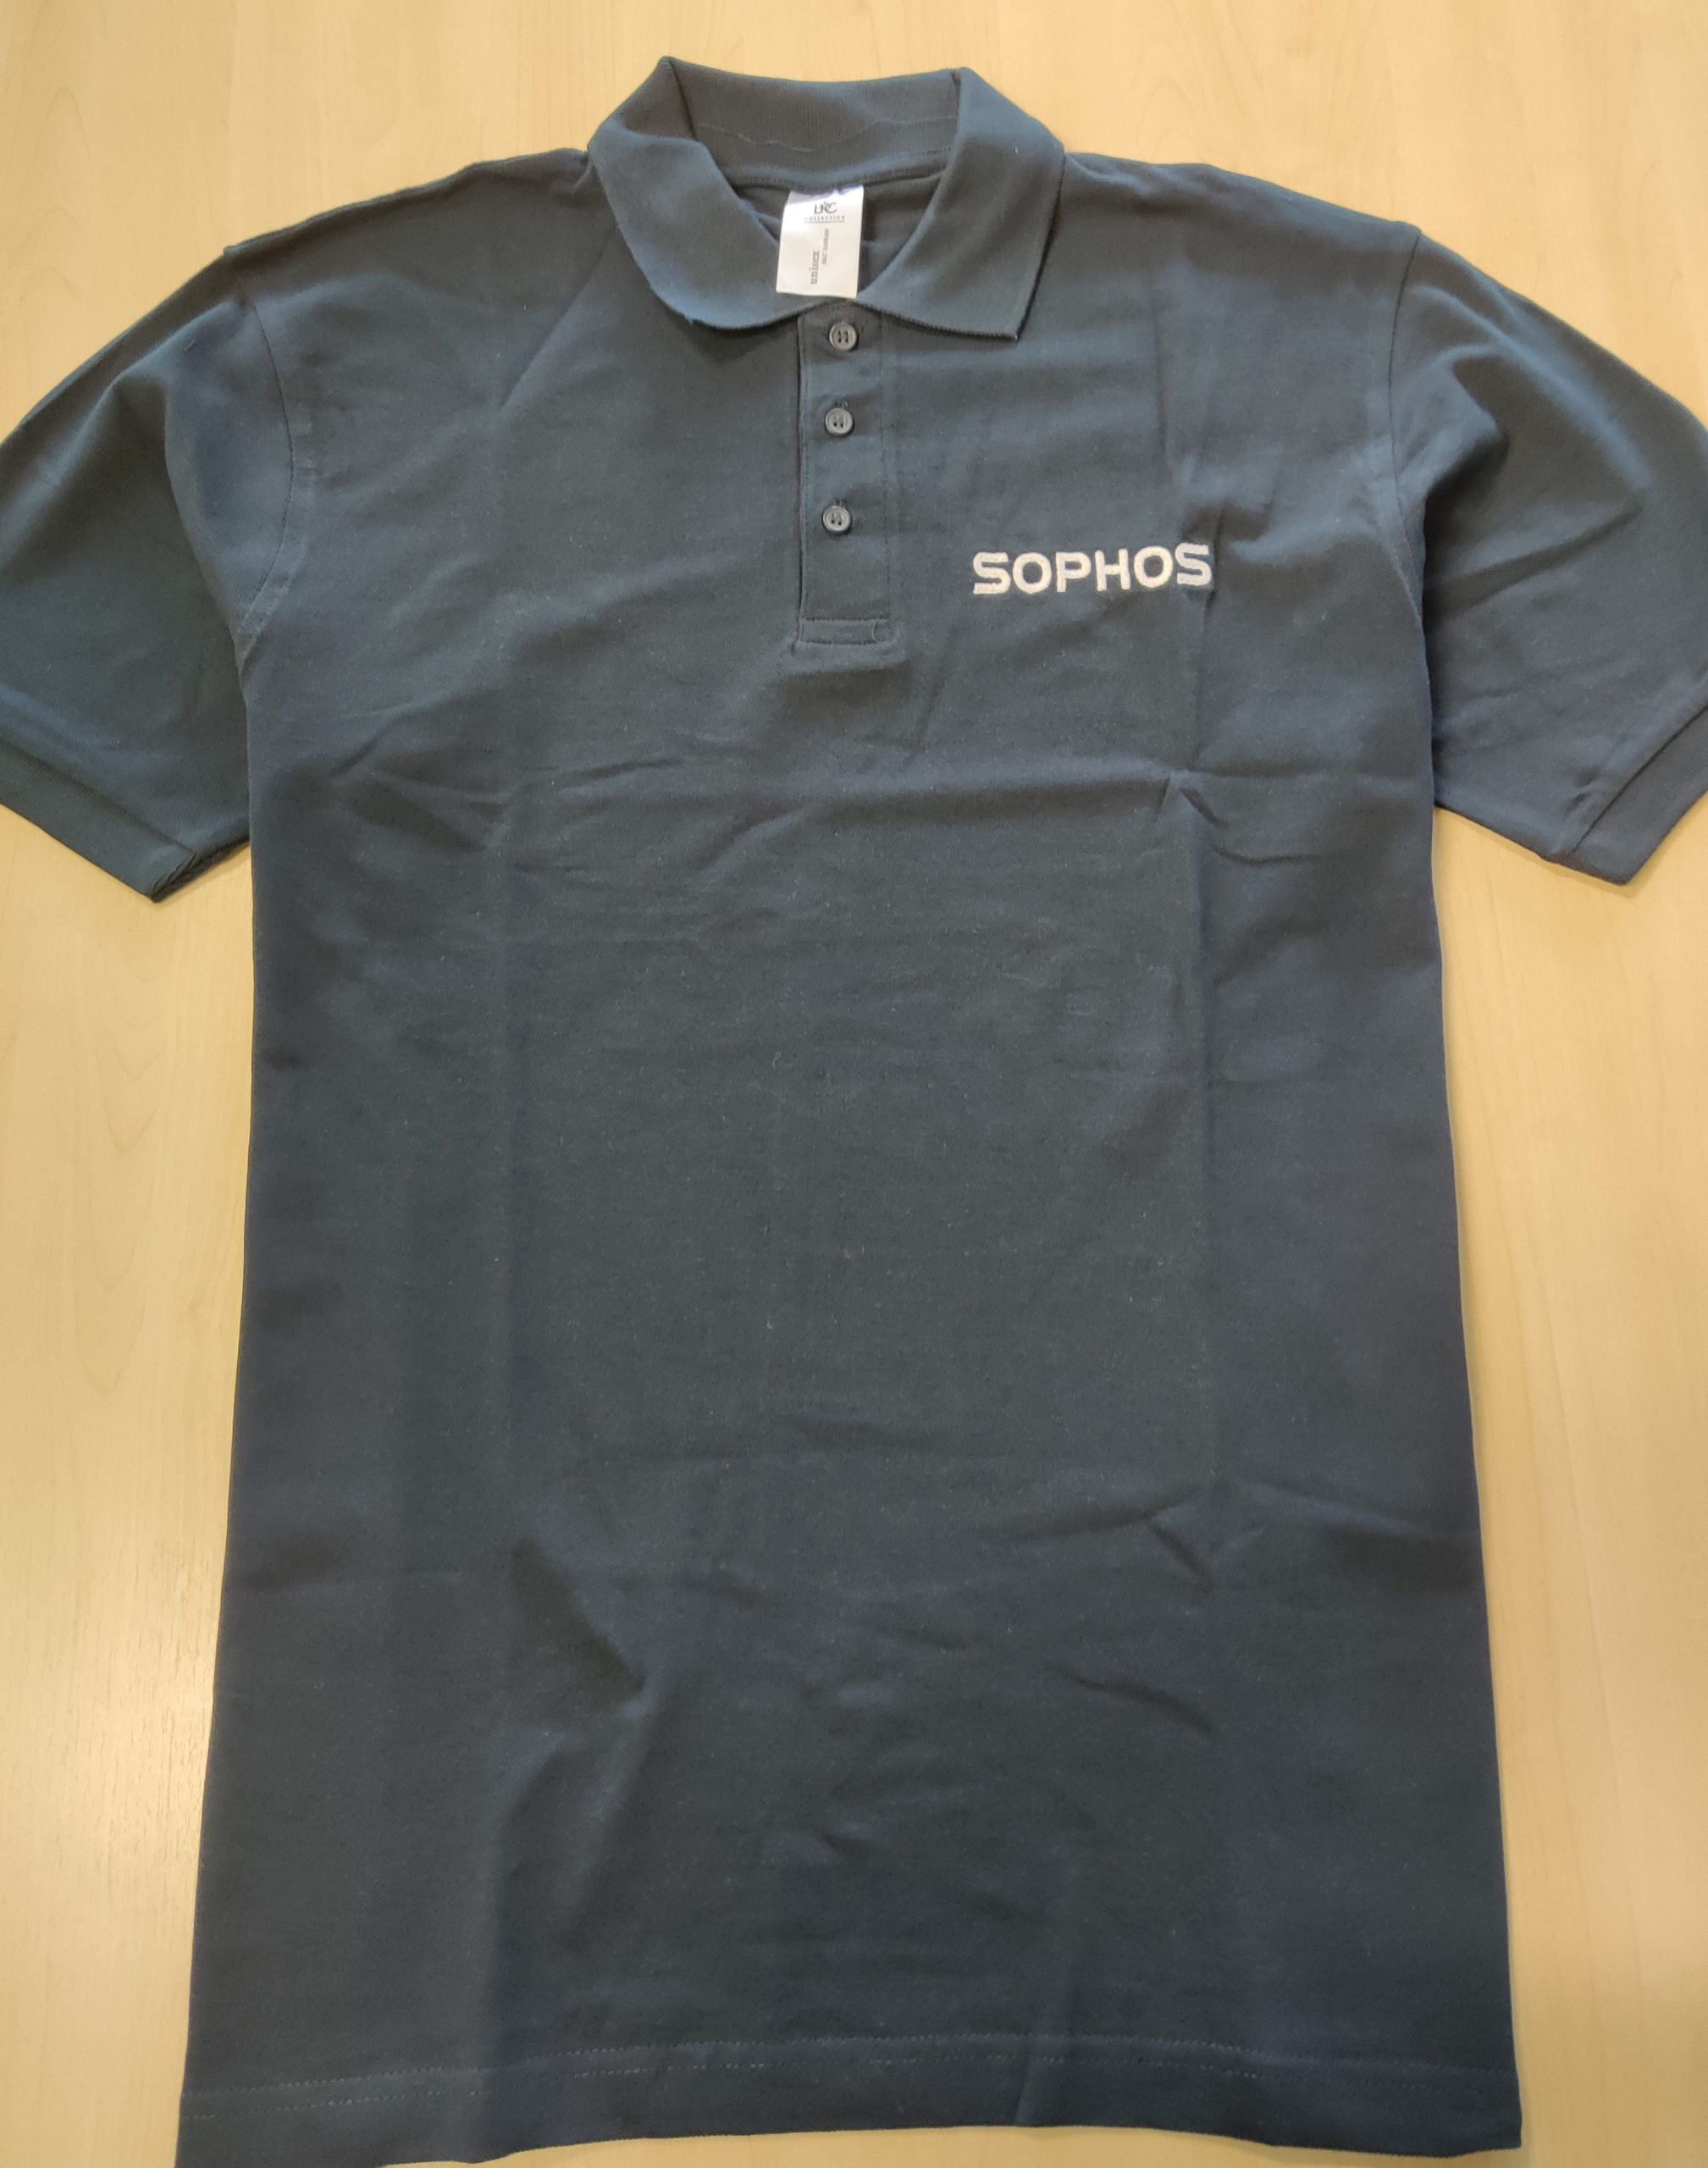 Tegyen online sikeres Sophos Sales Consultant vizsgát és ajándékba kap egy Sophos pólót!